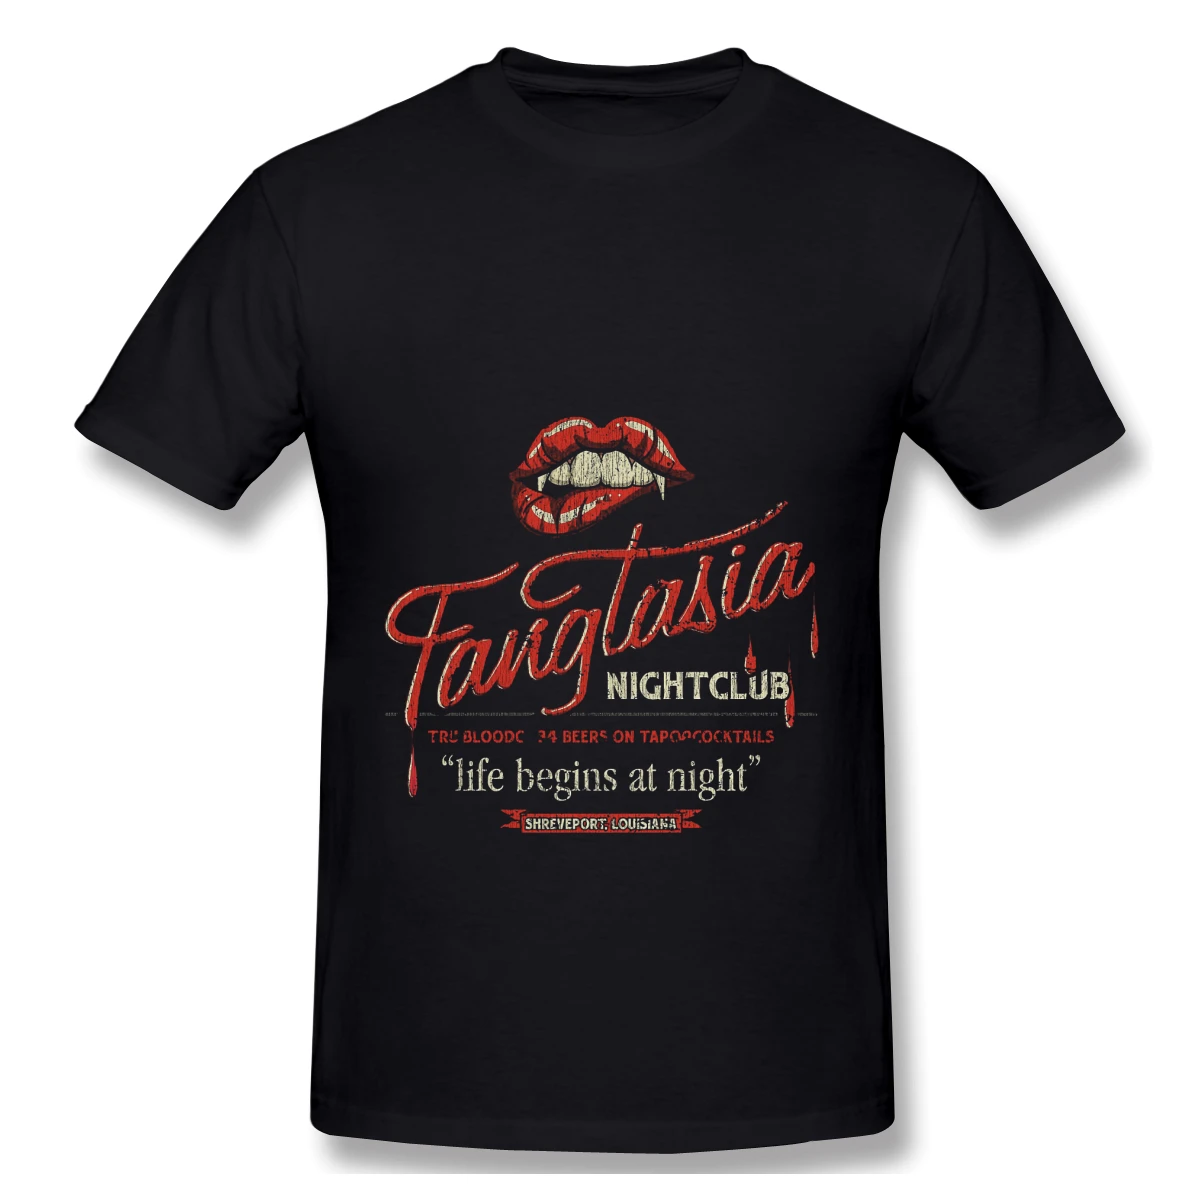 Fangtasia-Camiseta Vintage para club nocturno, Camisa de algodón, ofertas perdidas, de verano, nueva